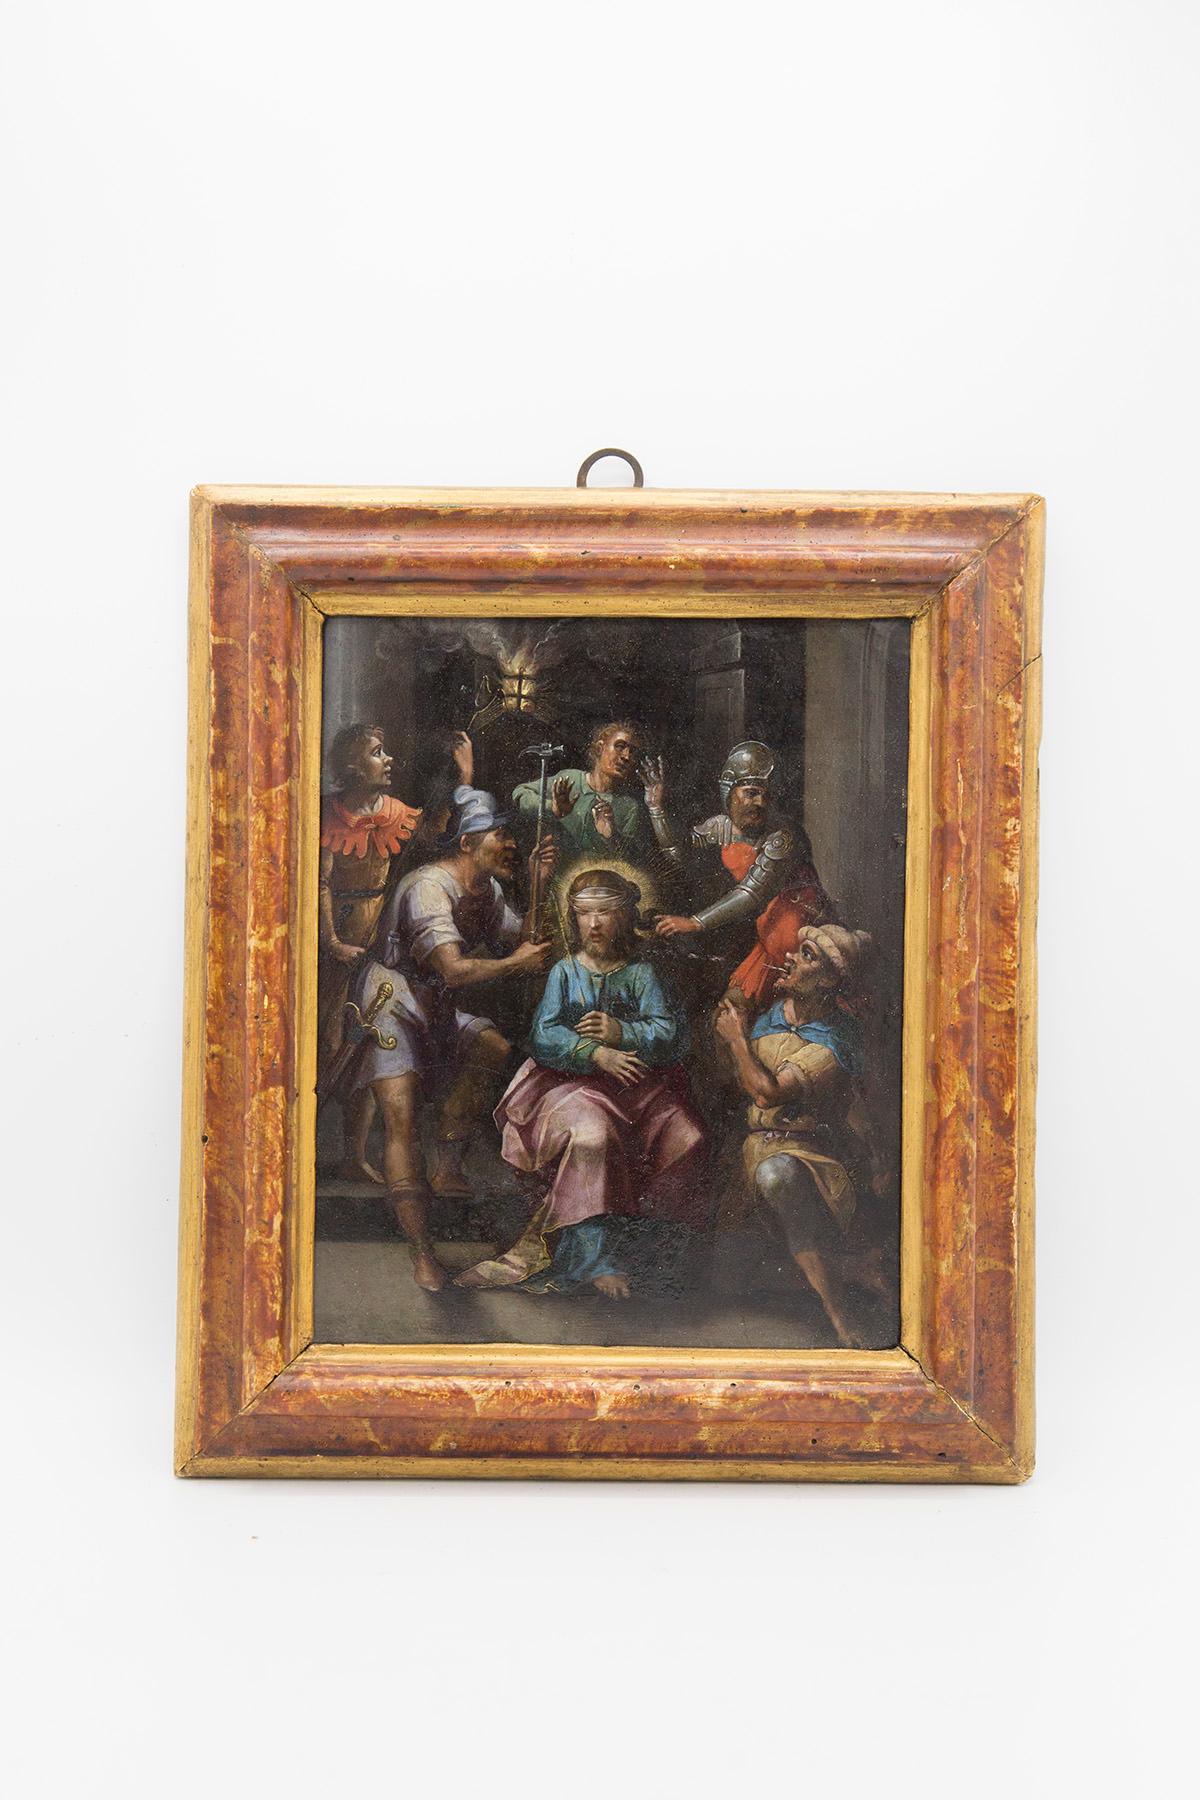 Peinture sur cuivre. École italienne de la fin du XVIIe siècle. La scène, qui raconte un moment de la Passion du Christ, est remplie de personnages, imbriqués les uns dans les autres et encadrant le Christ, au centre : sa figure, immobile et